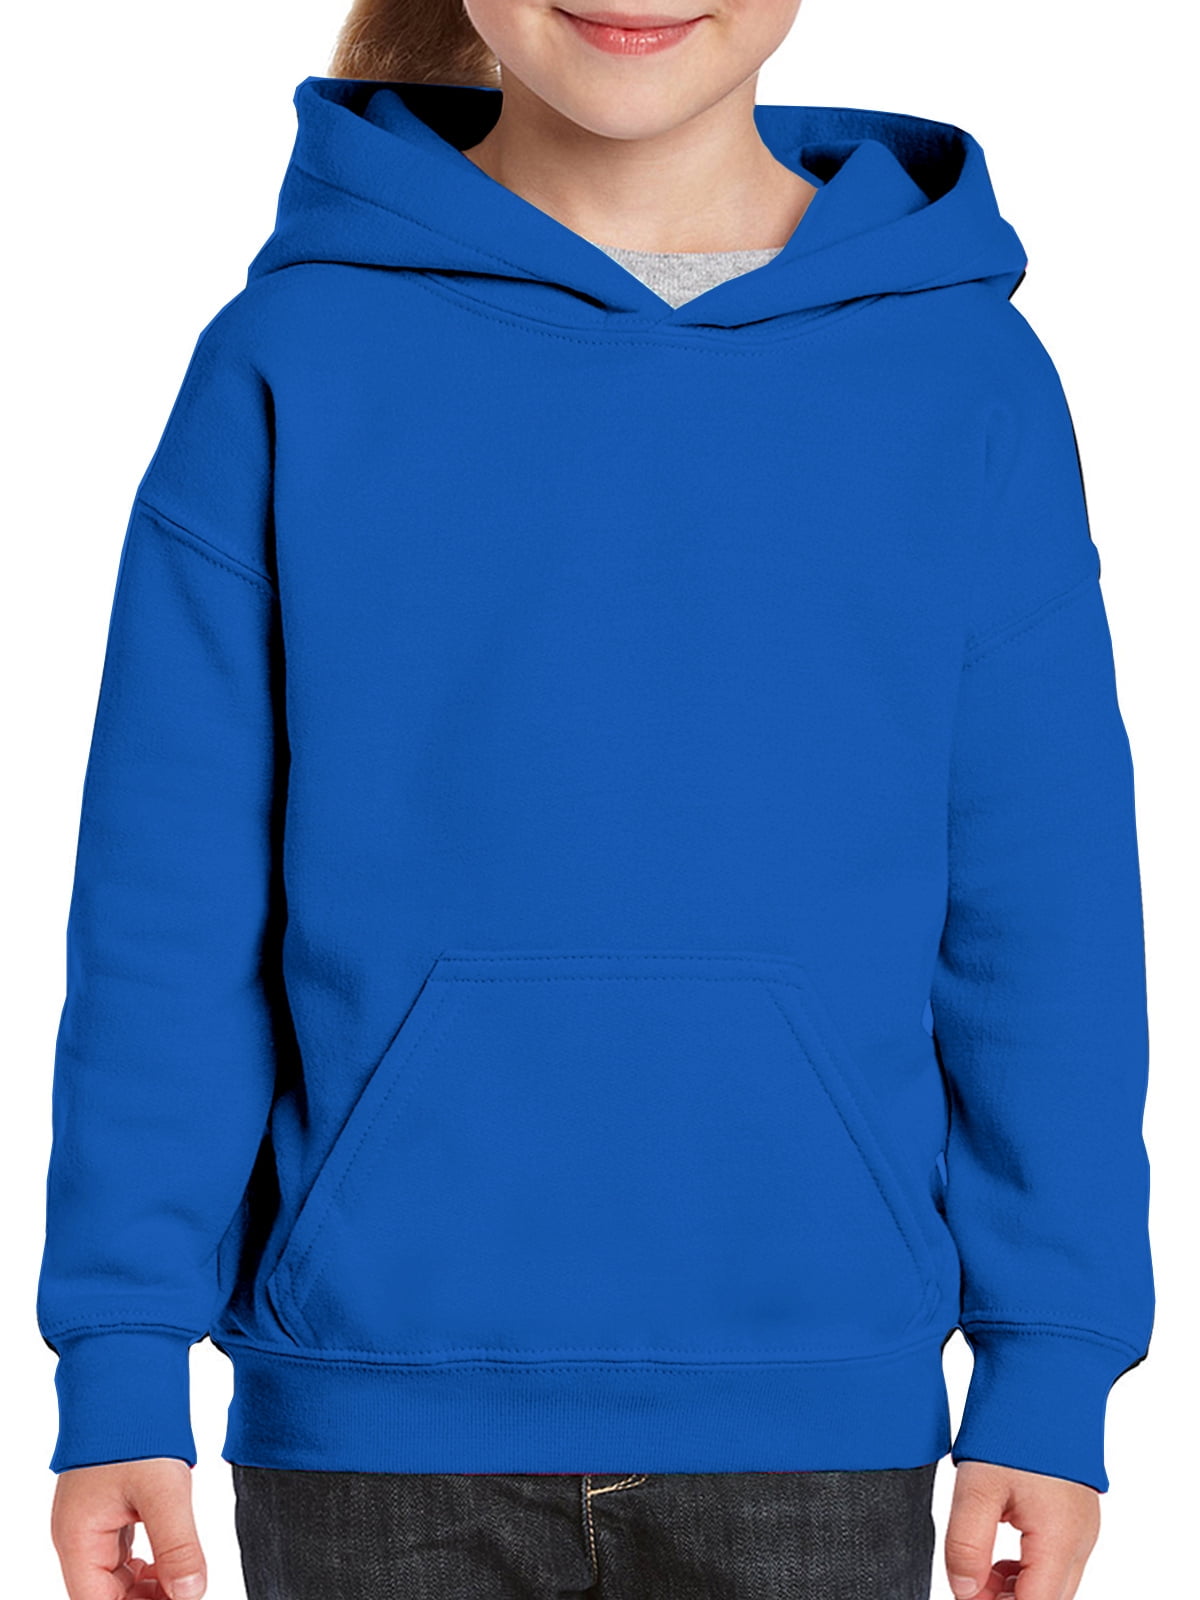 Kids Boy Girl Spiderman Print Hooded Hoodie Sweatshirt Pullover Jumper Coat Tops 